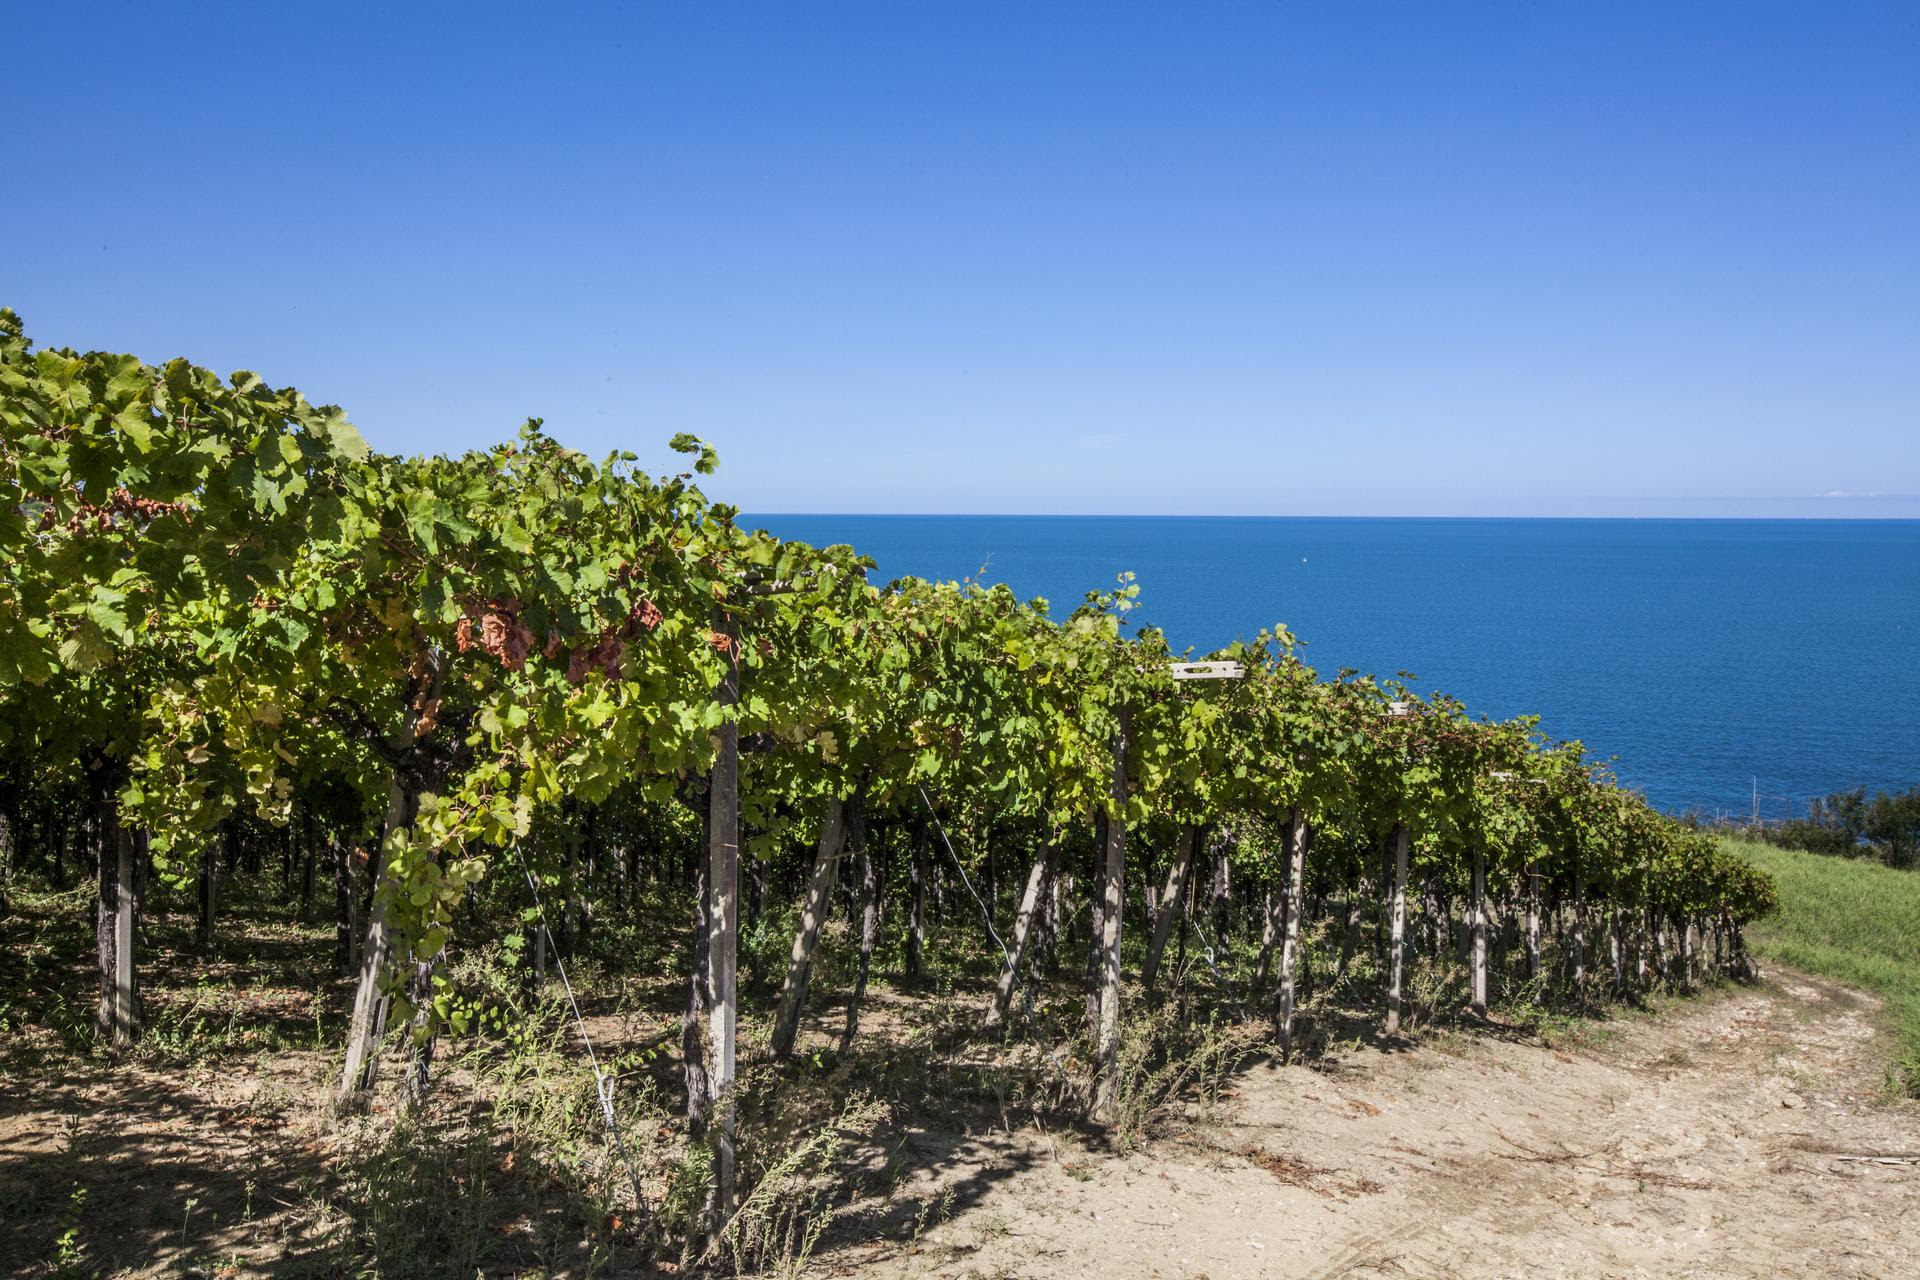 Racconti e storie sui vini d'Abruzzo.... Premio giornalistico del Consorzio tutela regionale